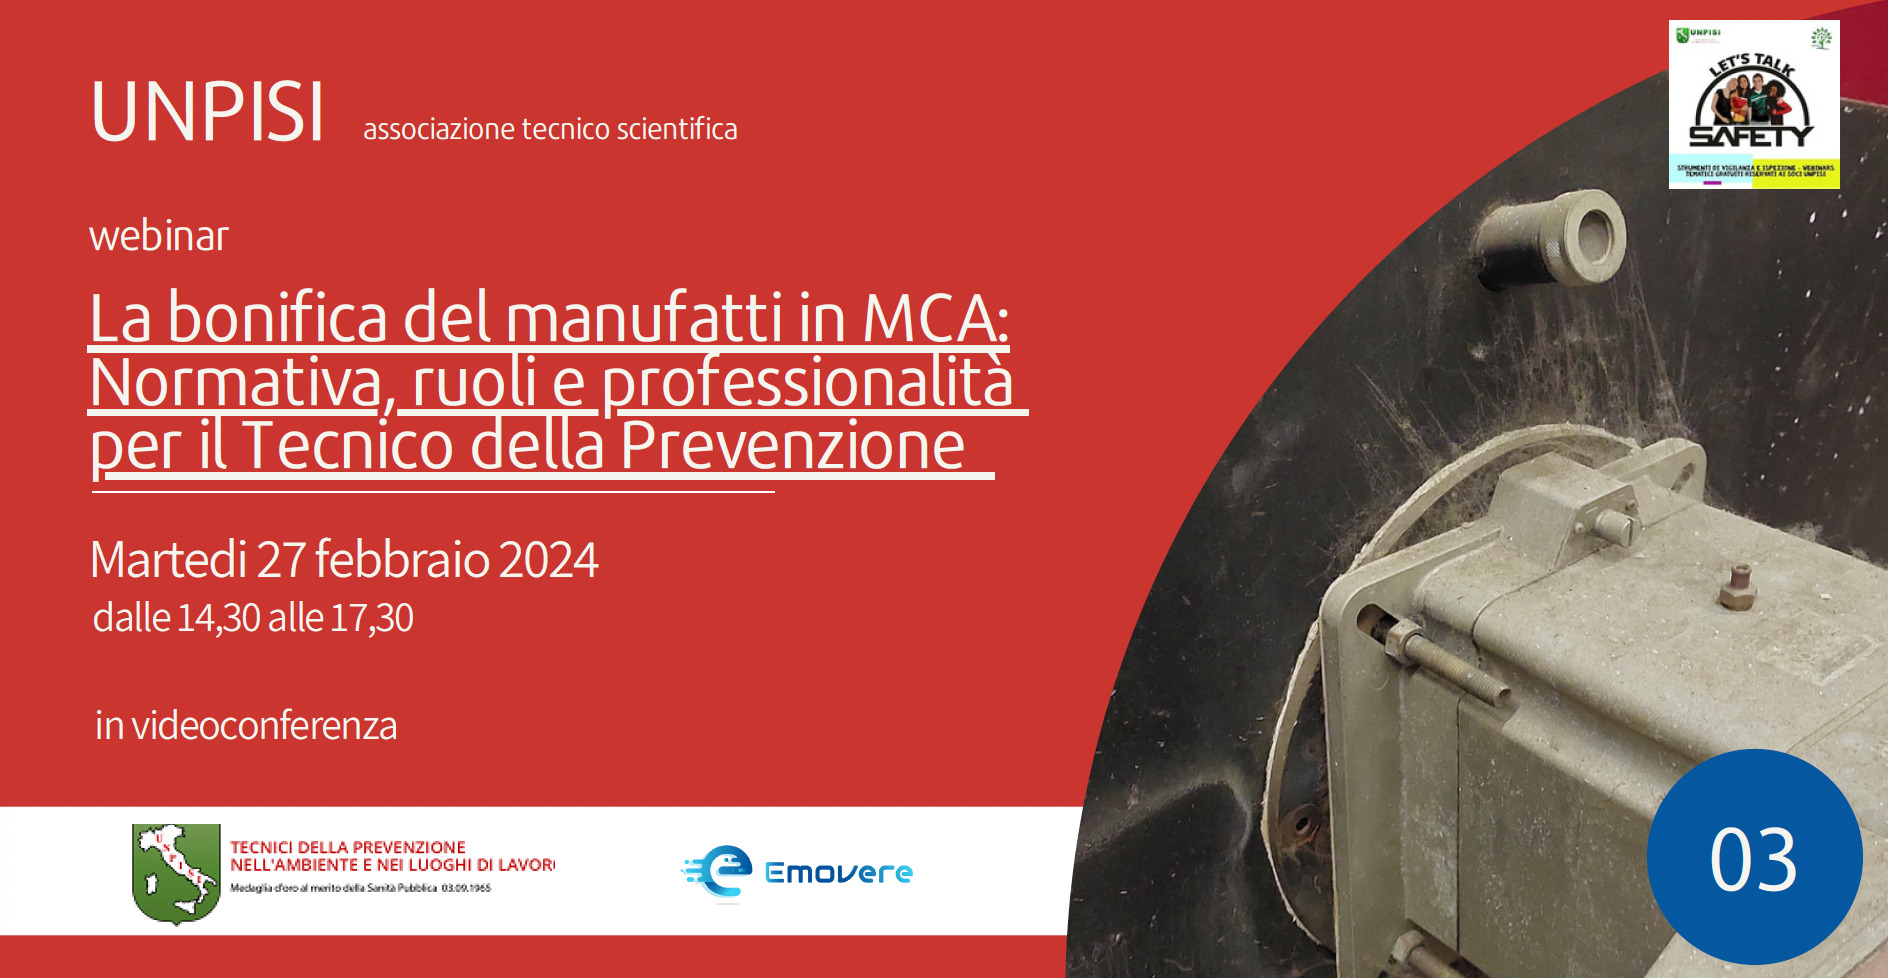 Disponibili i contenuti del Webinar “La bonifica del manufatti in MCA: Normativa, ruoli e professionalità per il Tecnico della Prevenzione”- 27 febbraio 2024